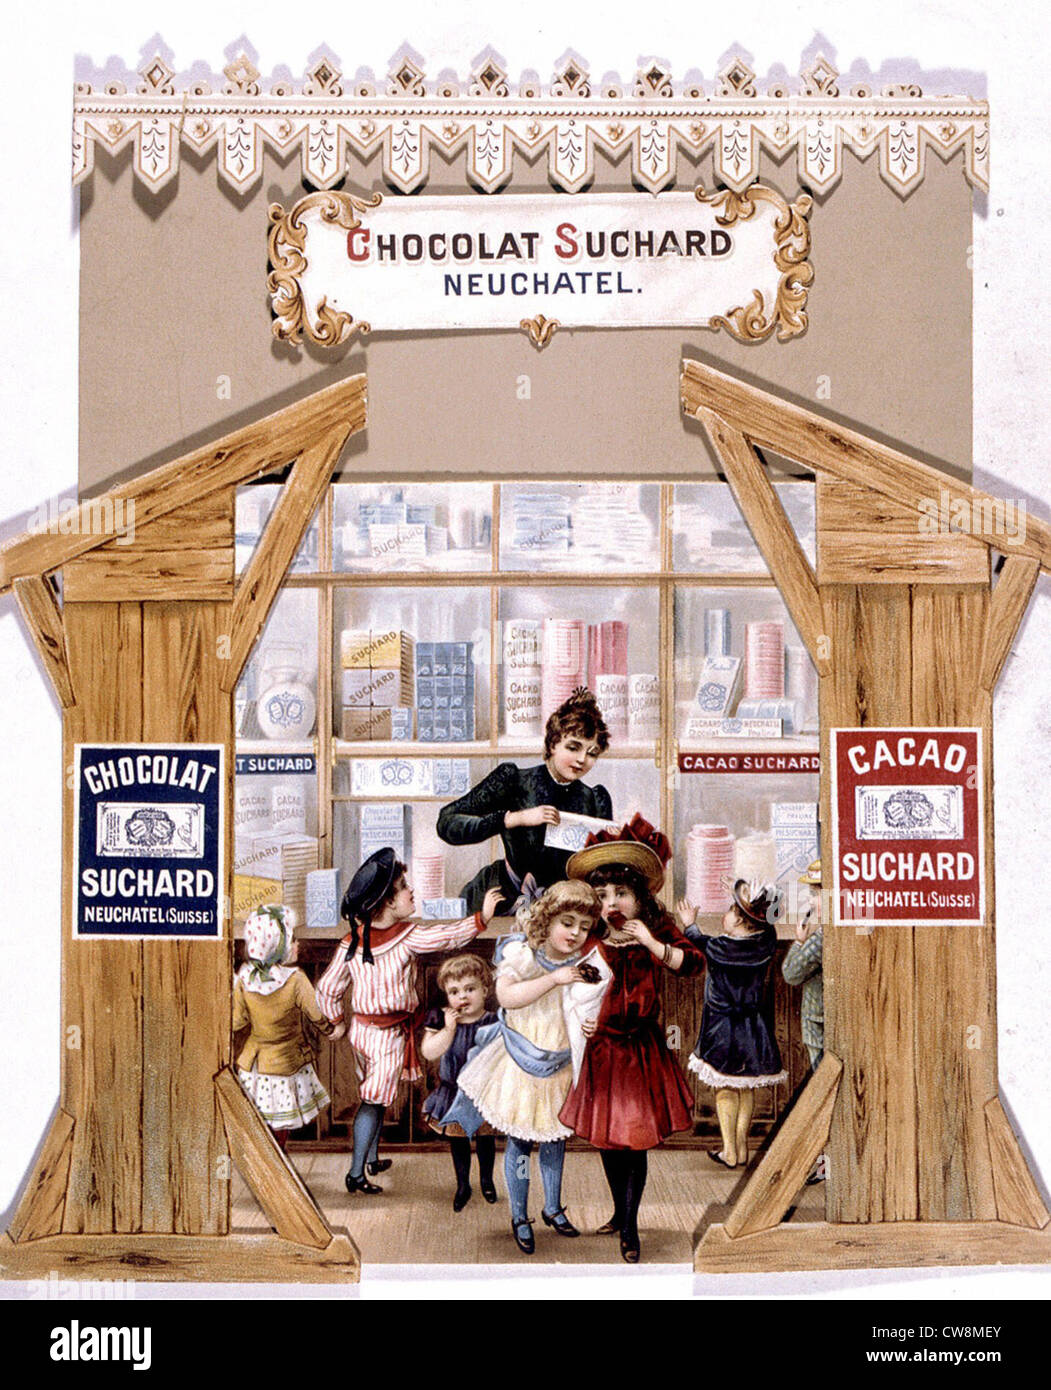 Suchard Chocolate, 19th century advertisement Stock Photo